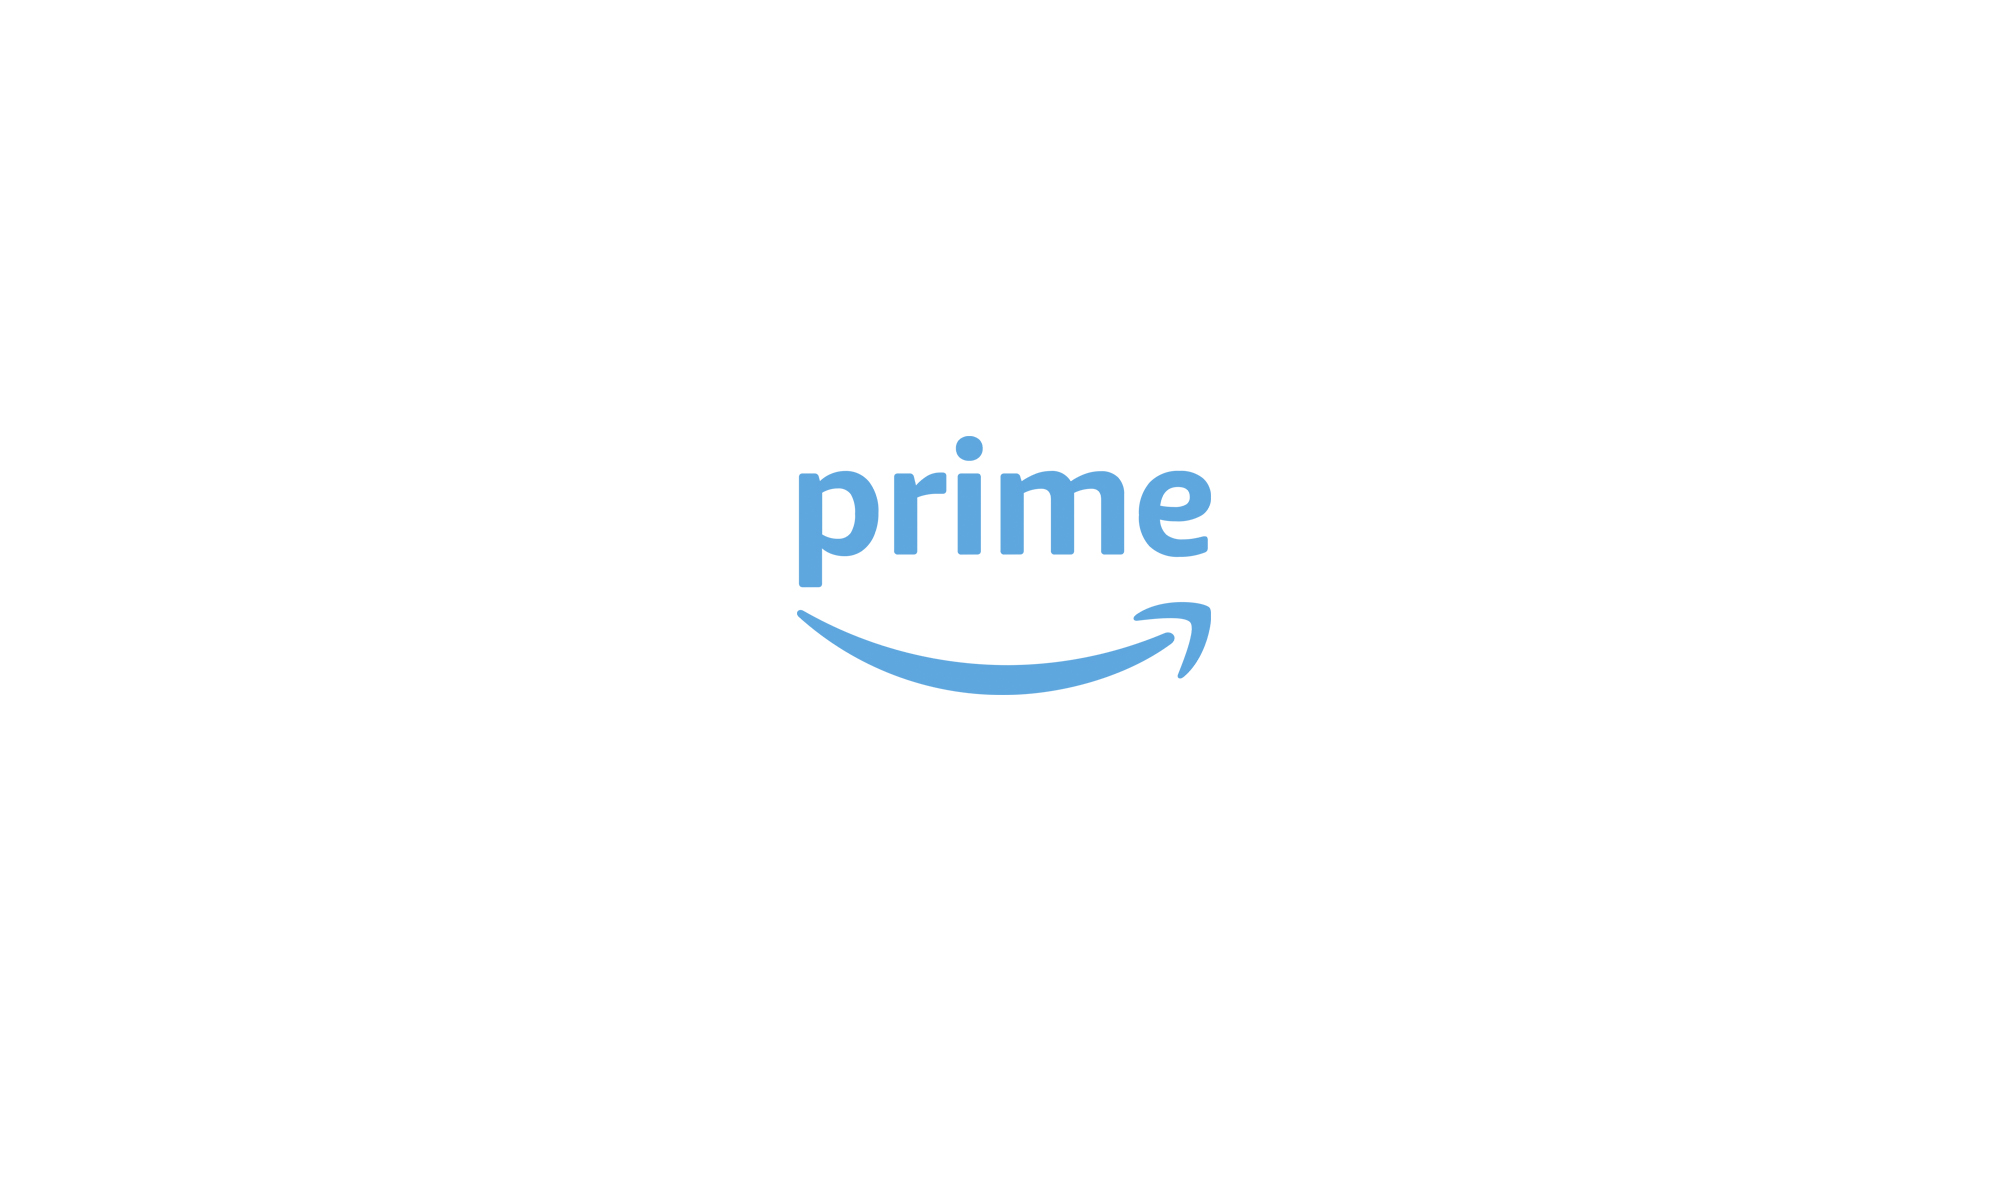 Tài khoản Amazon Prime là gì? Cách đăng ký tài khoản Amazon Prime?